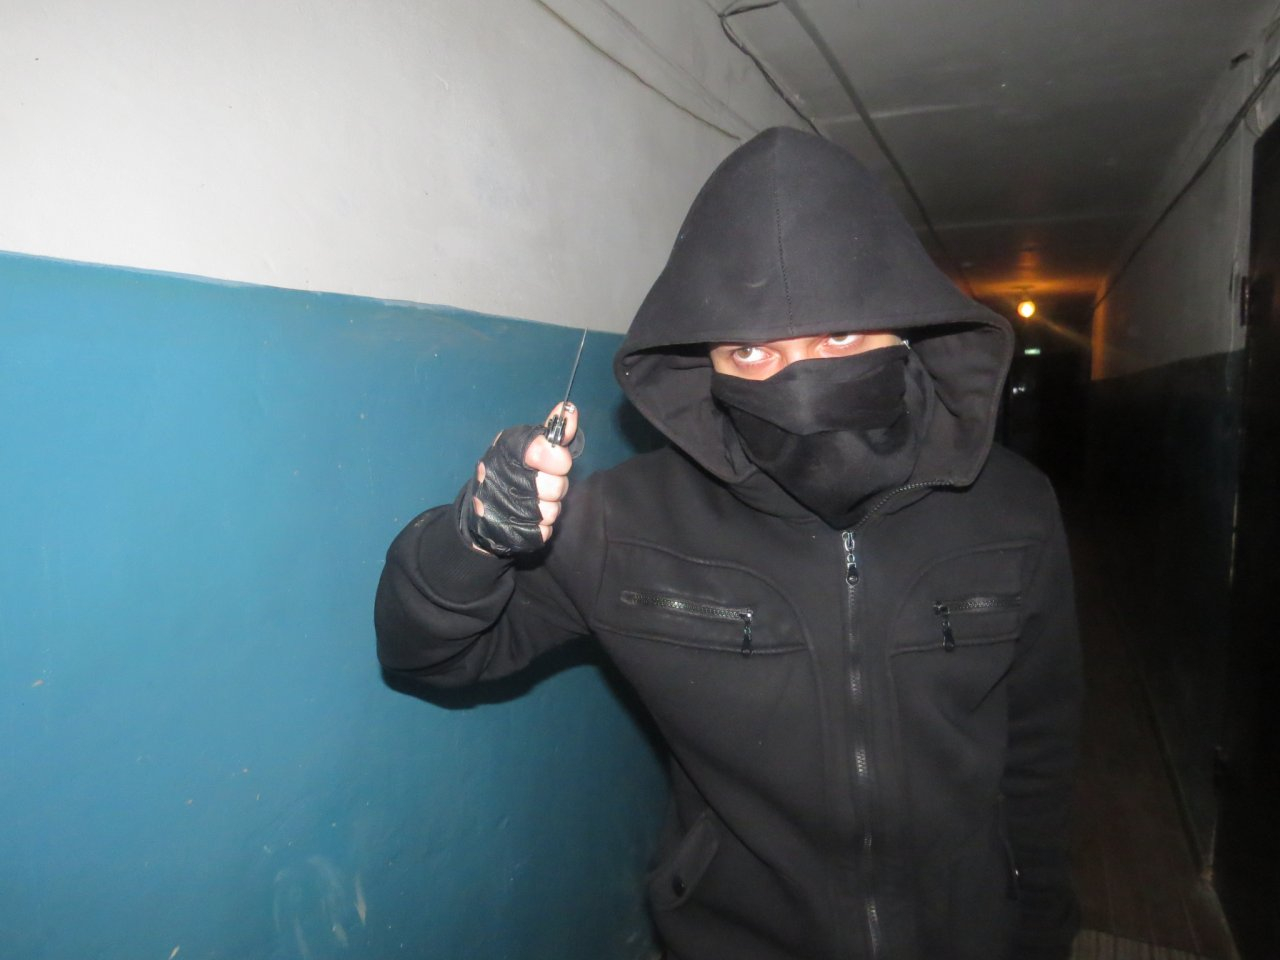 Боевик по-пензенски: трое в масках с пистолетами ворвались в квартиру и напали на жильцов